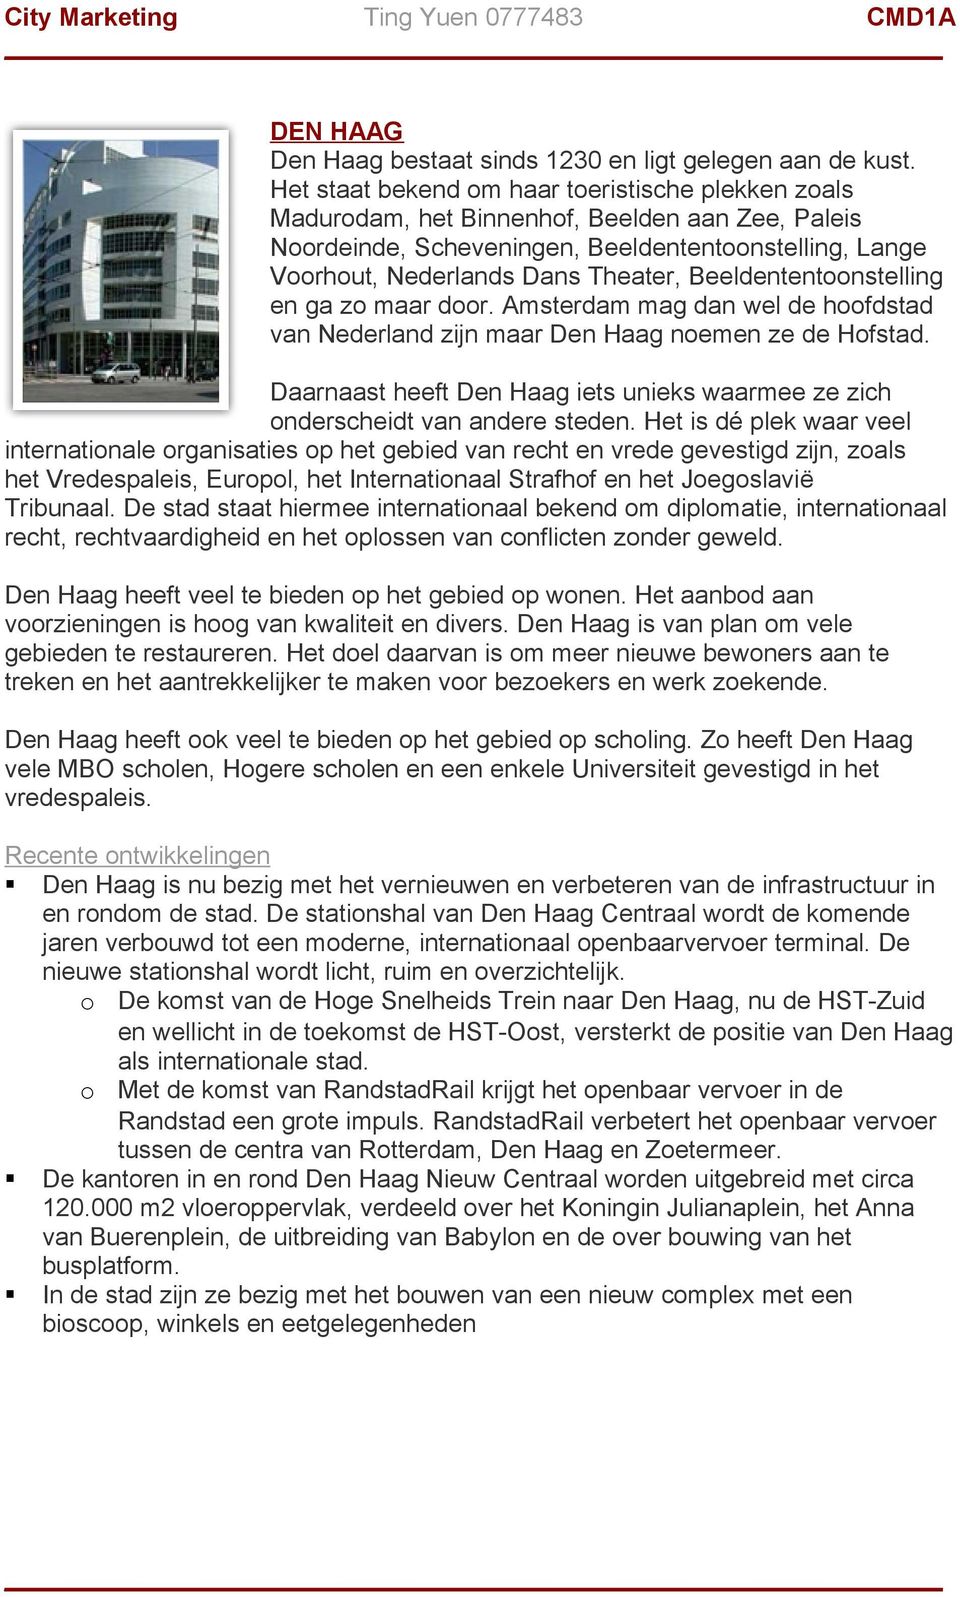 Beeldententoonstelling en ga zo maar door. Amsterdam mag dan wel de hoofdstad van Nederland zijn maar Den Haag noemen ze de Hofstad.